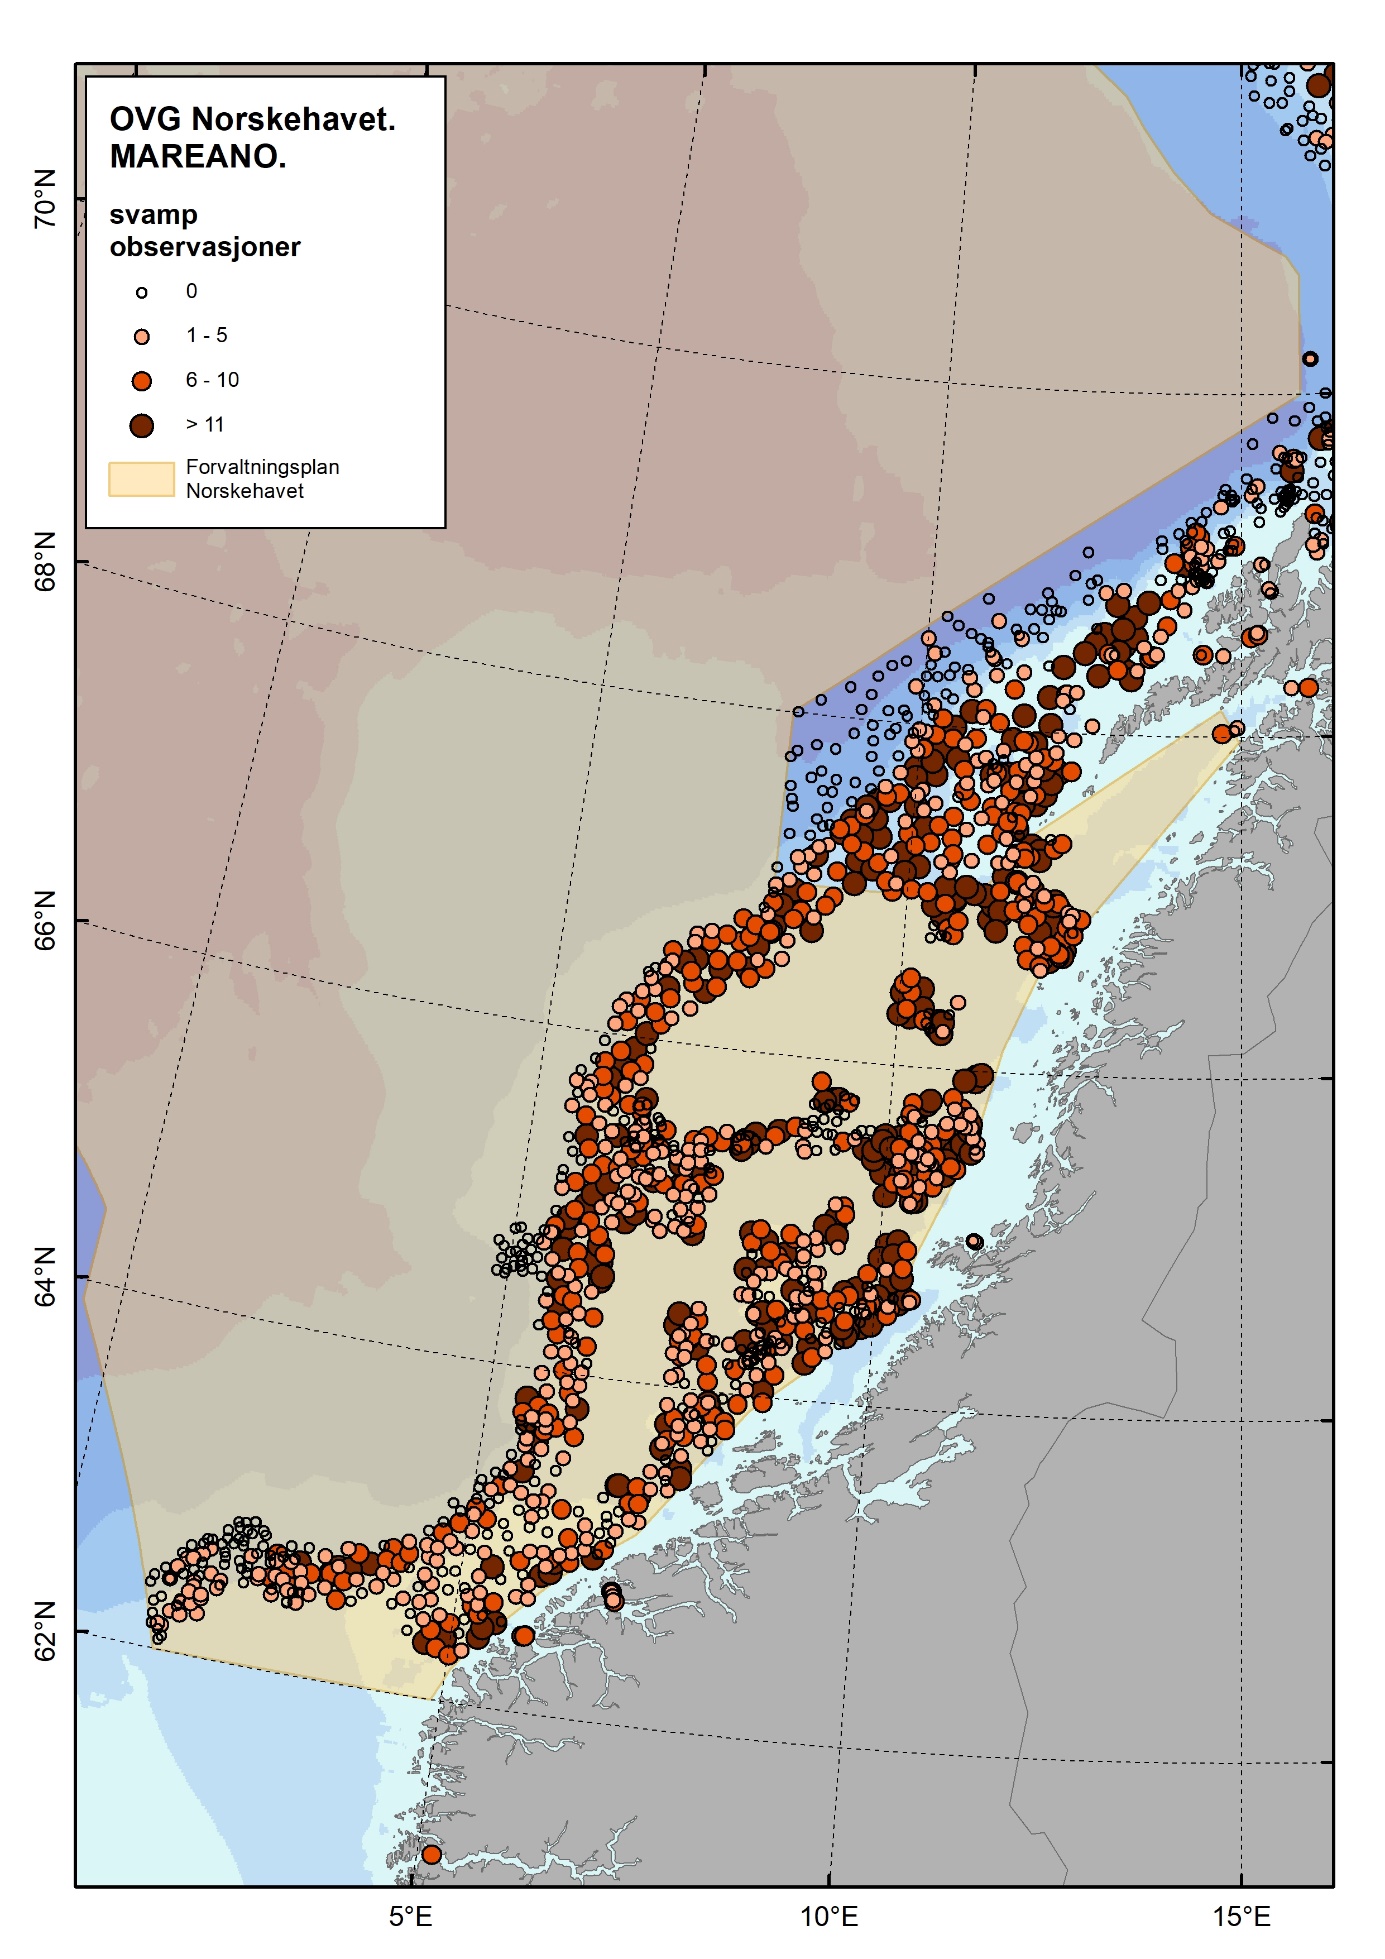 Figur 4.2.7.4 Oversikt over fordeling av svamp i Norskehavet basert på observasjoner i felt. Størrelse og farge på symbolene indikerer antall observasjoner per videolinje. Kilde: Mareano.